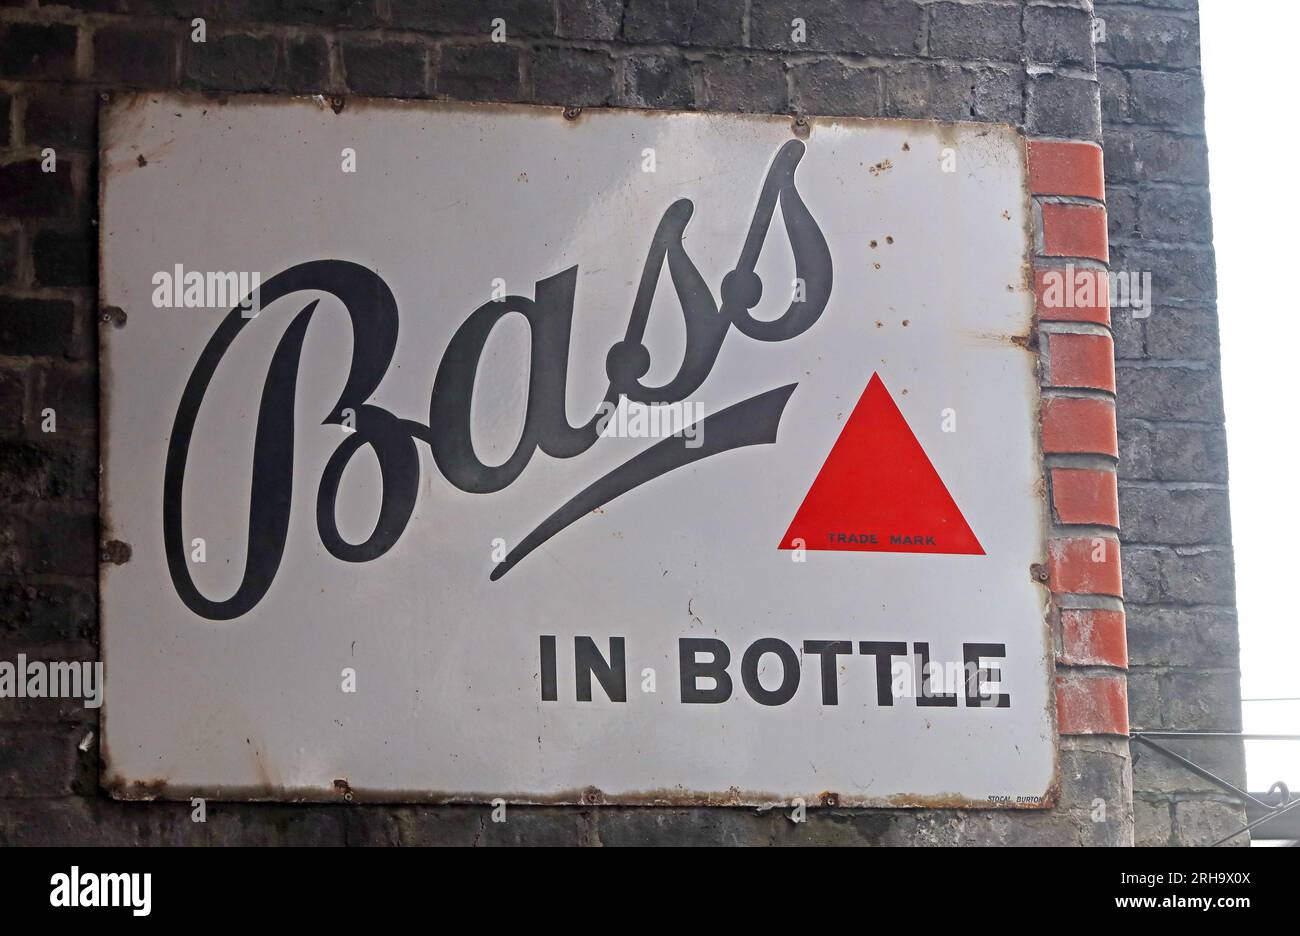 Berühmte Marke Bass in Bottle, rotes Dreieck 1875, auf einem Metall-Emailschild, Wigan, Lancashire, England, Großbritannien Stockfoto